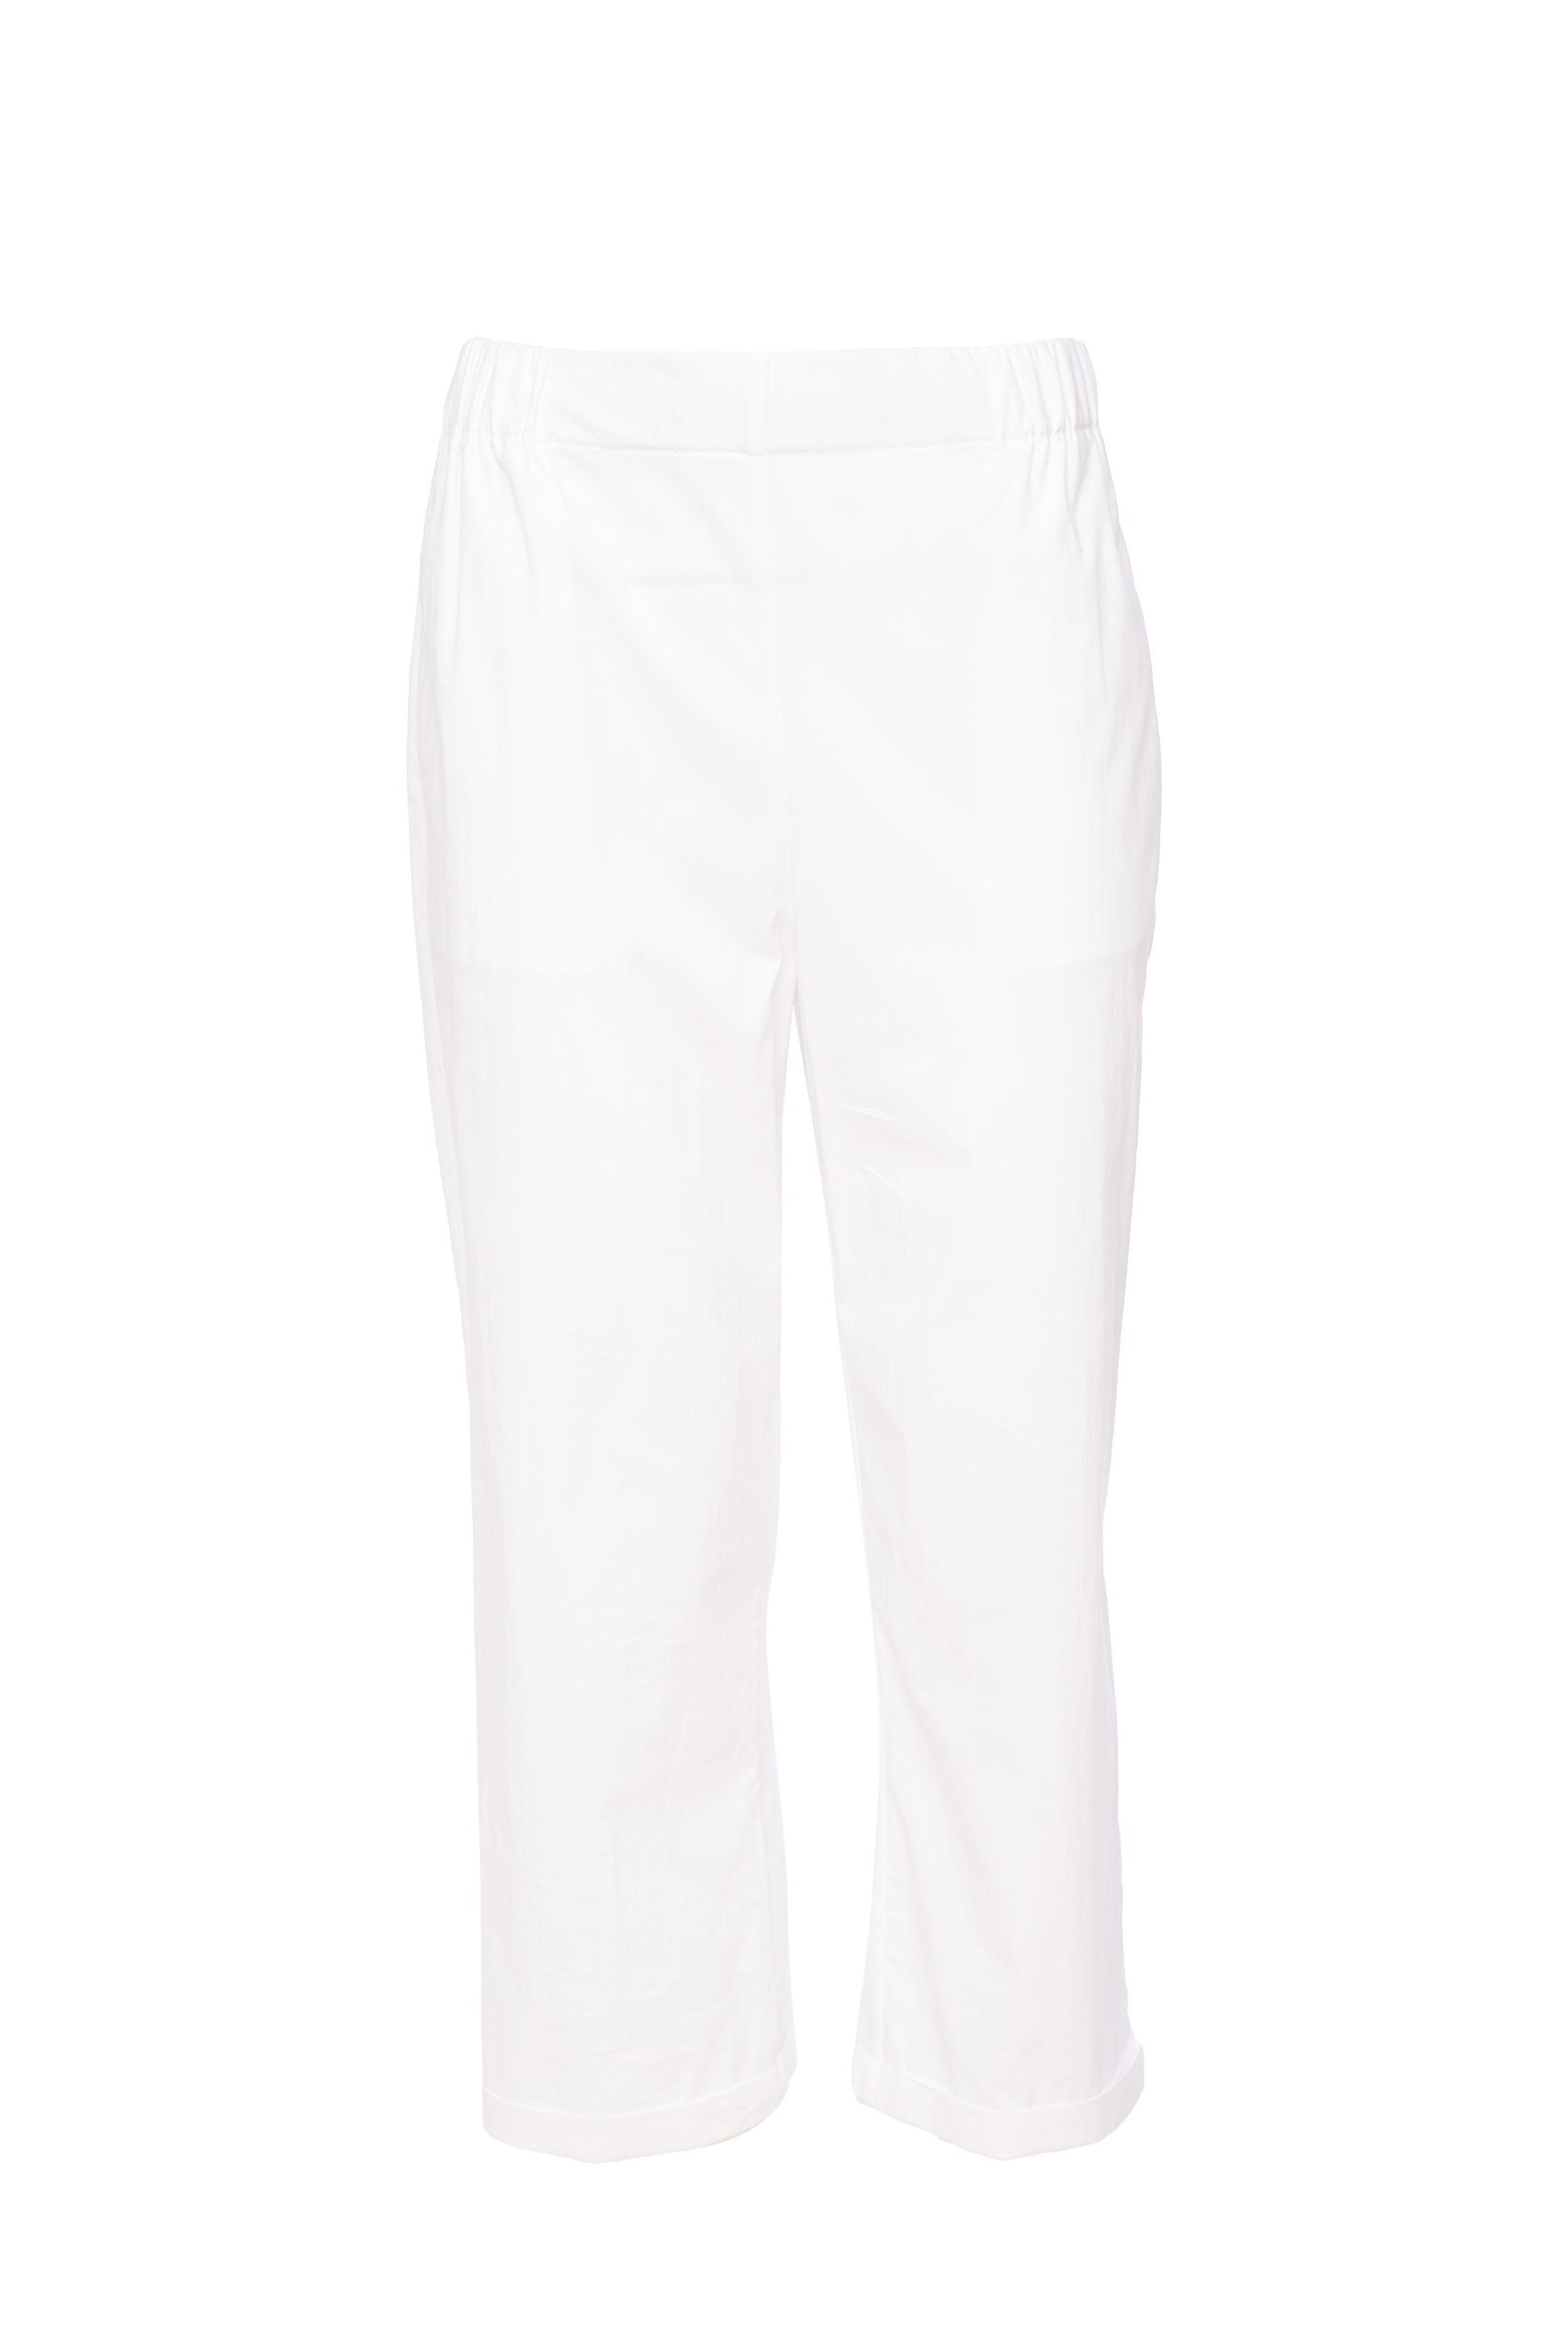 White Trousers - NAS24297